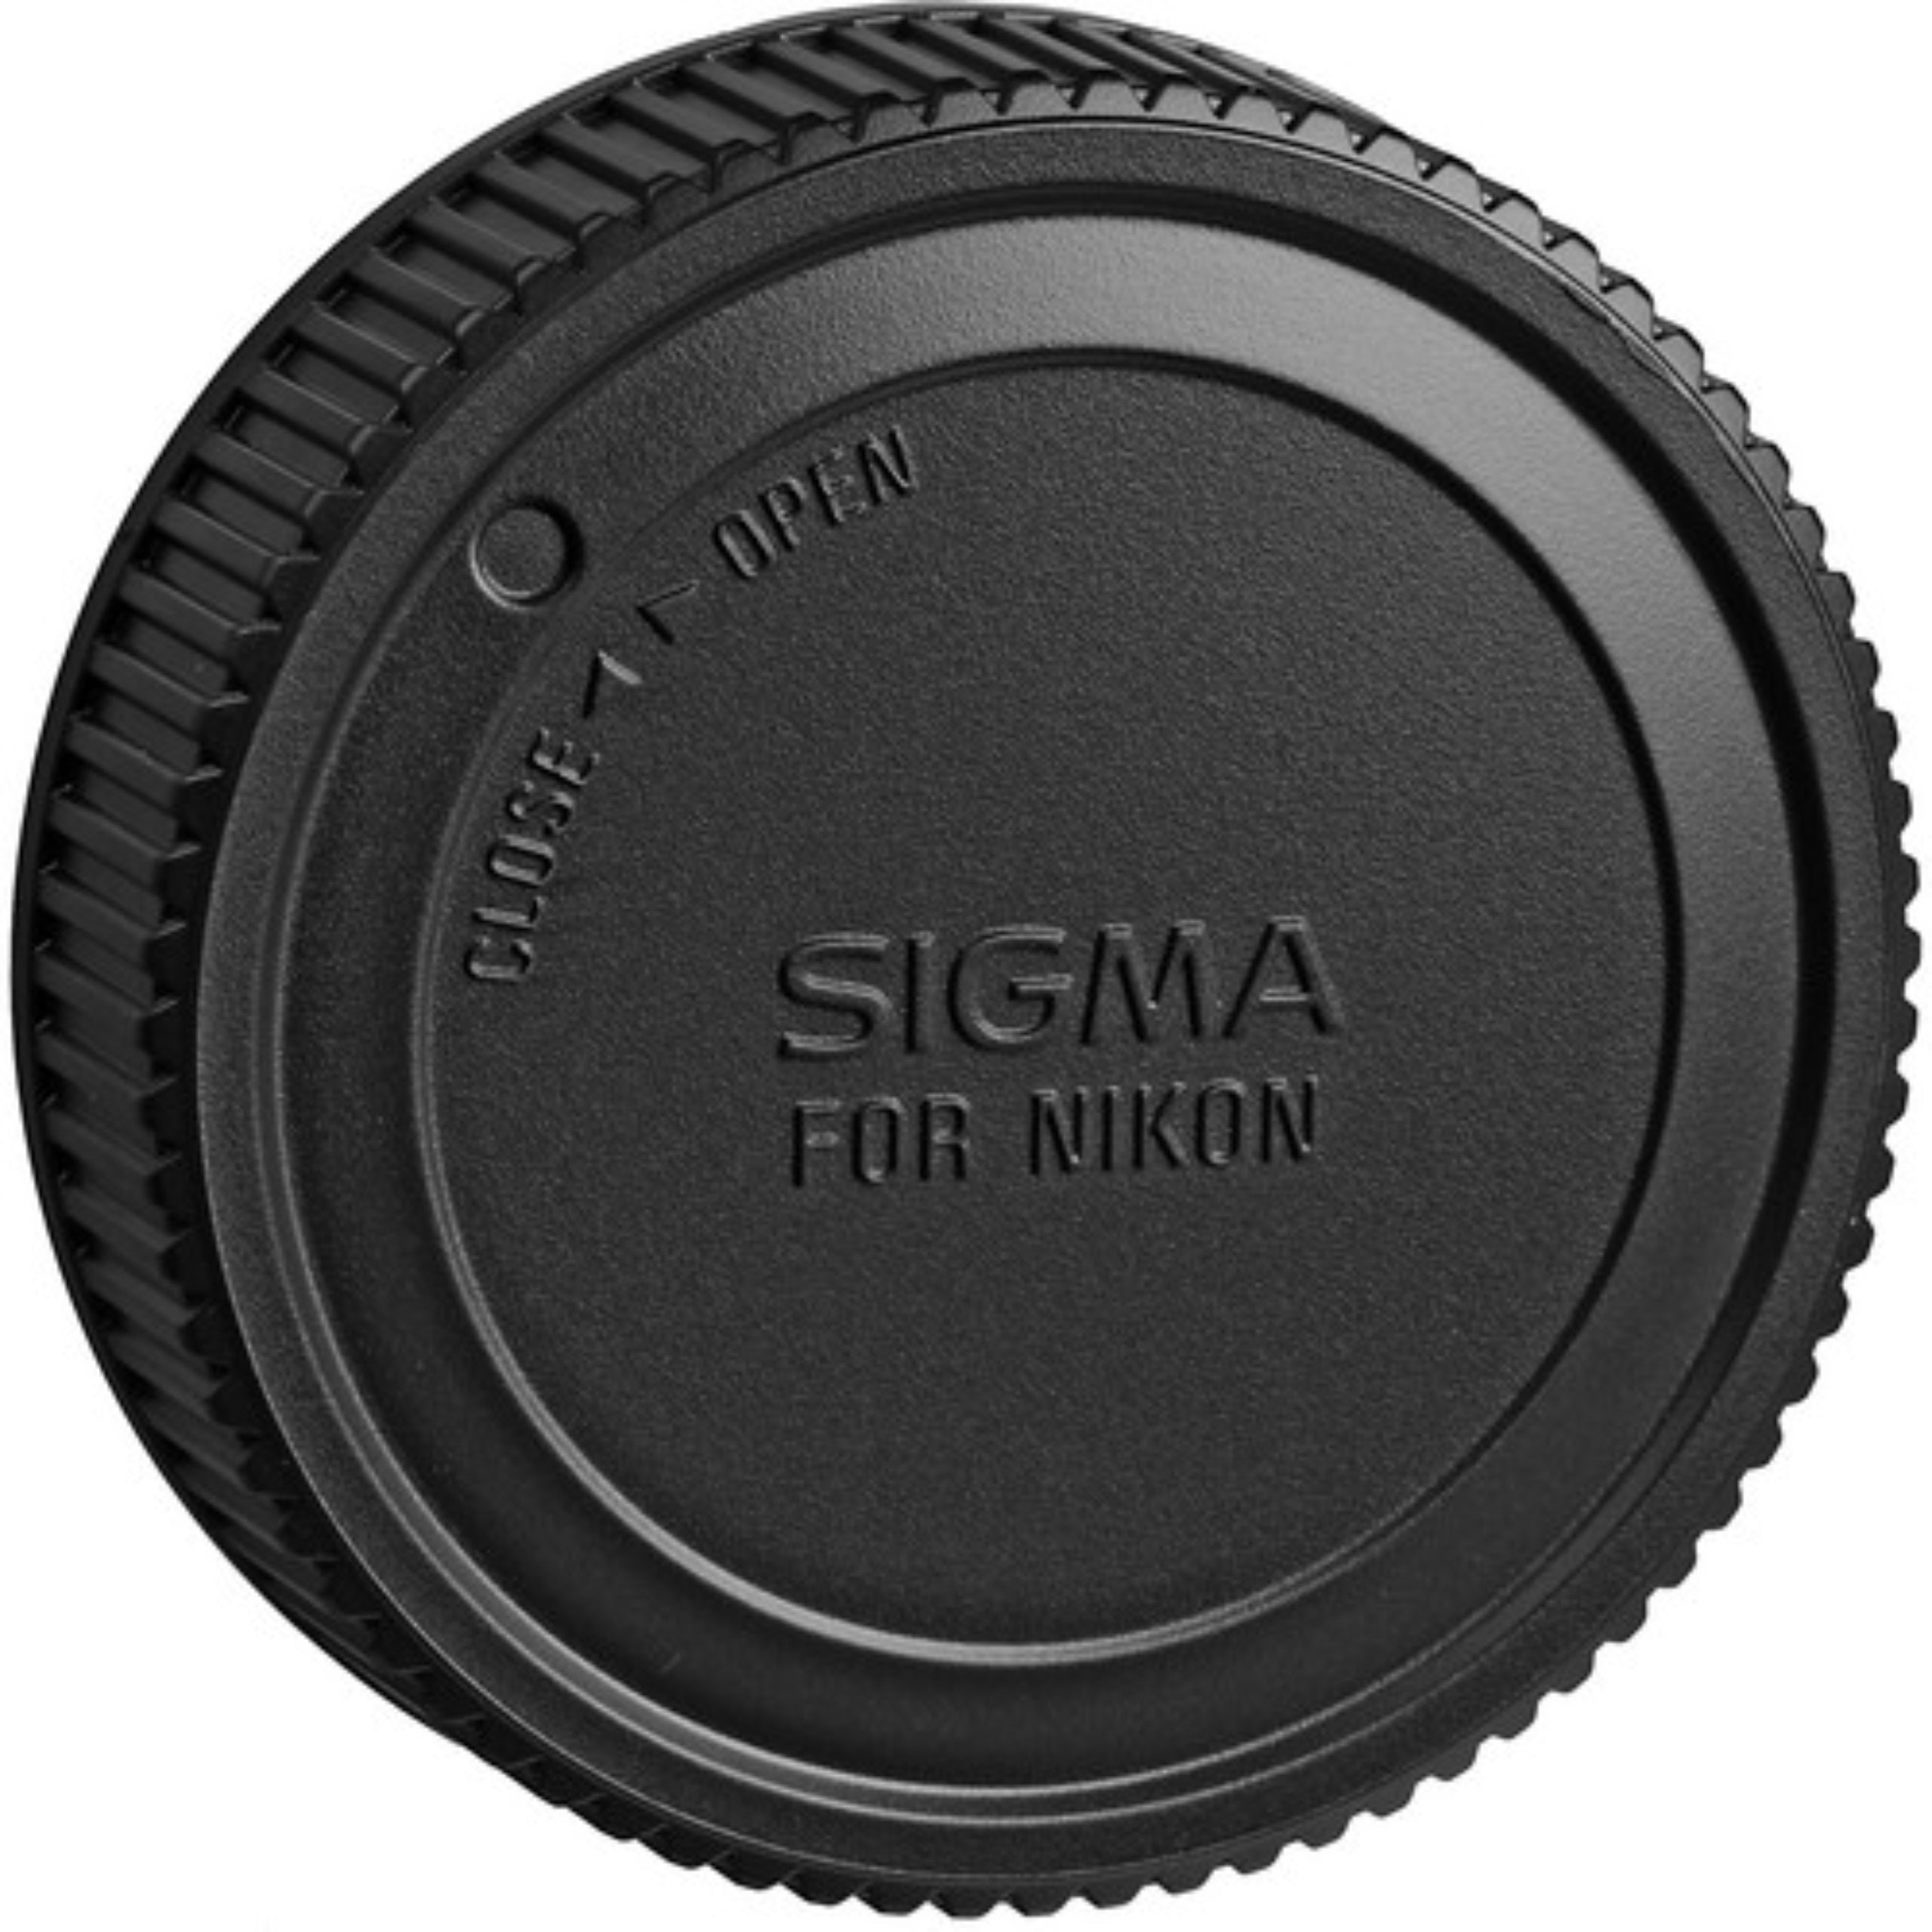 Sigma 17-50mm f/2.8 EX DC OS HSM FLD Large Aperture Standard Zoom Lens for Nikon Digital DSLR Camera